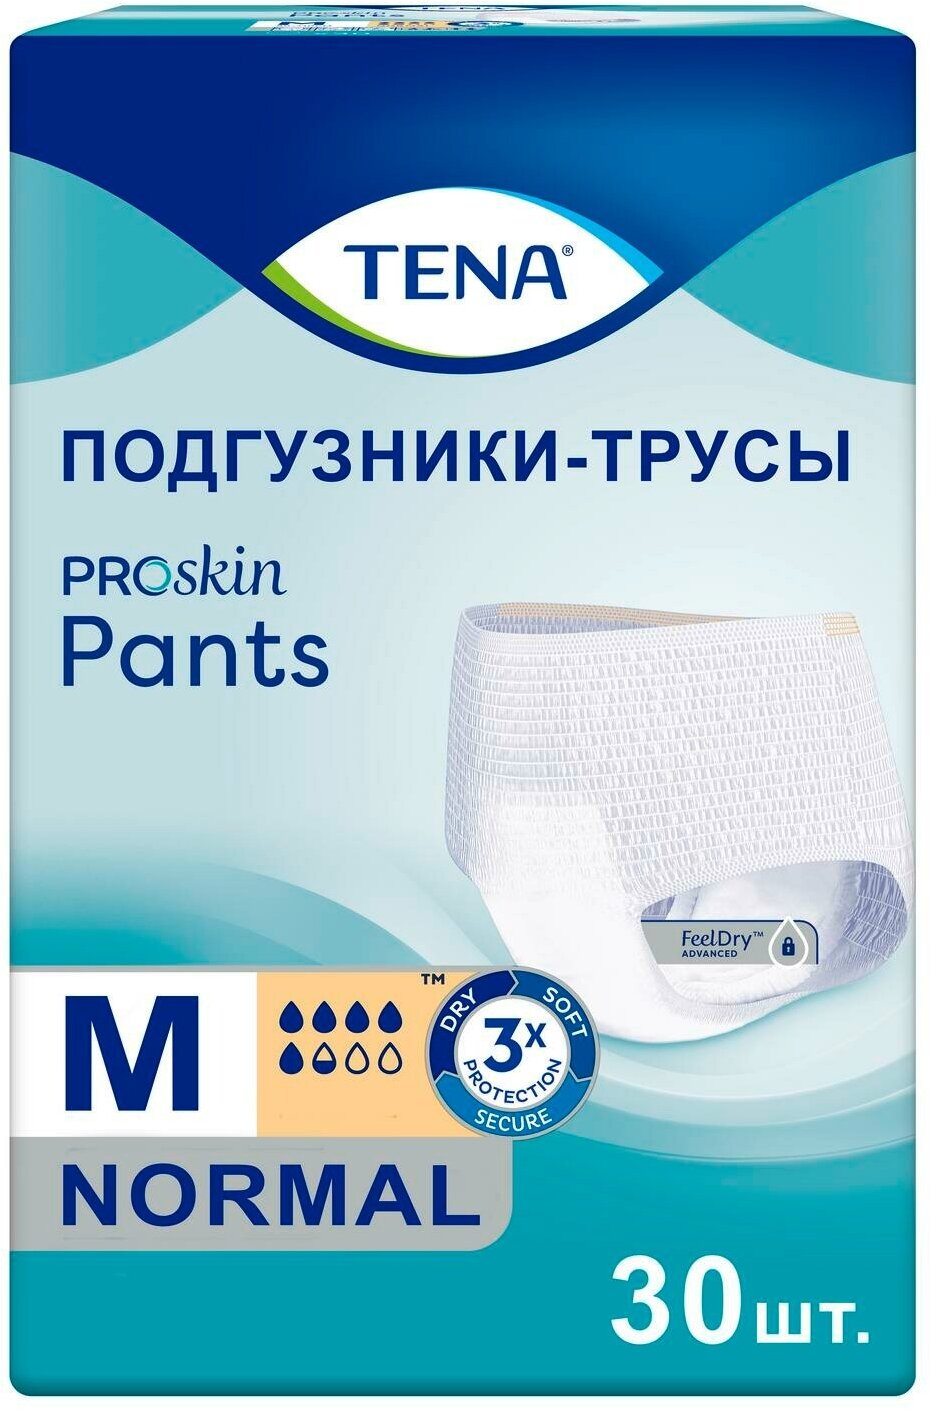 Подгузники-трусы для взрослых Tena Pants Normal M, 30 шт